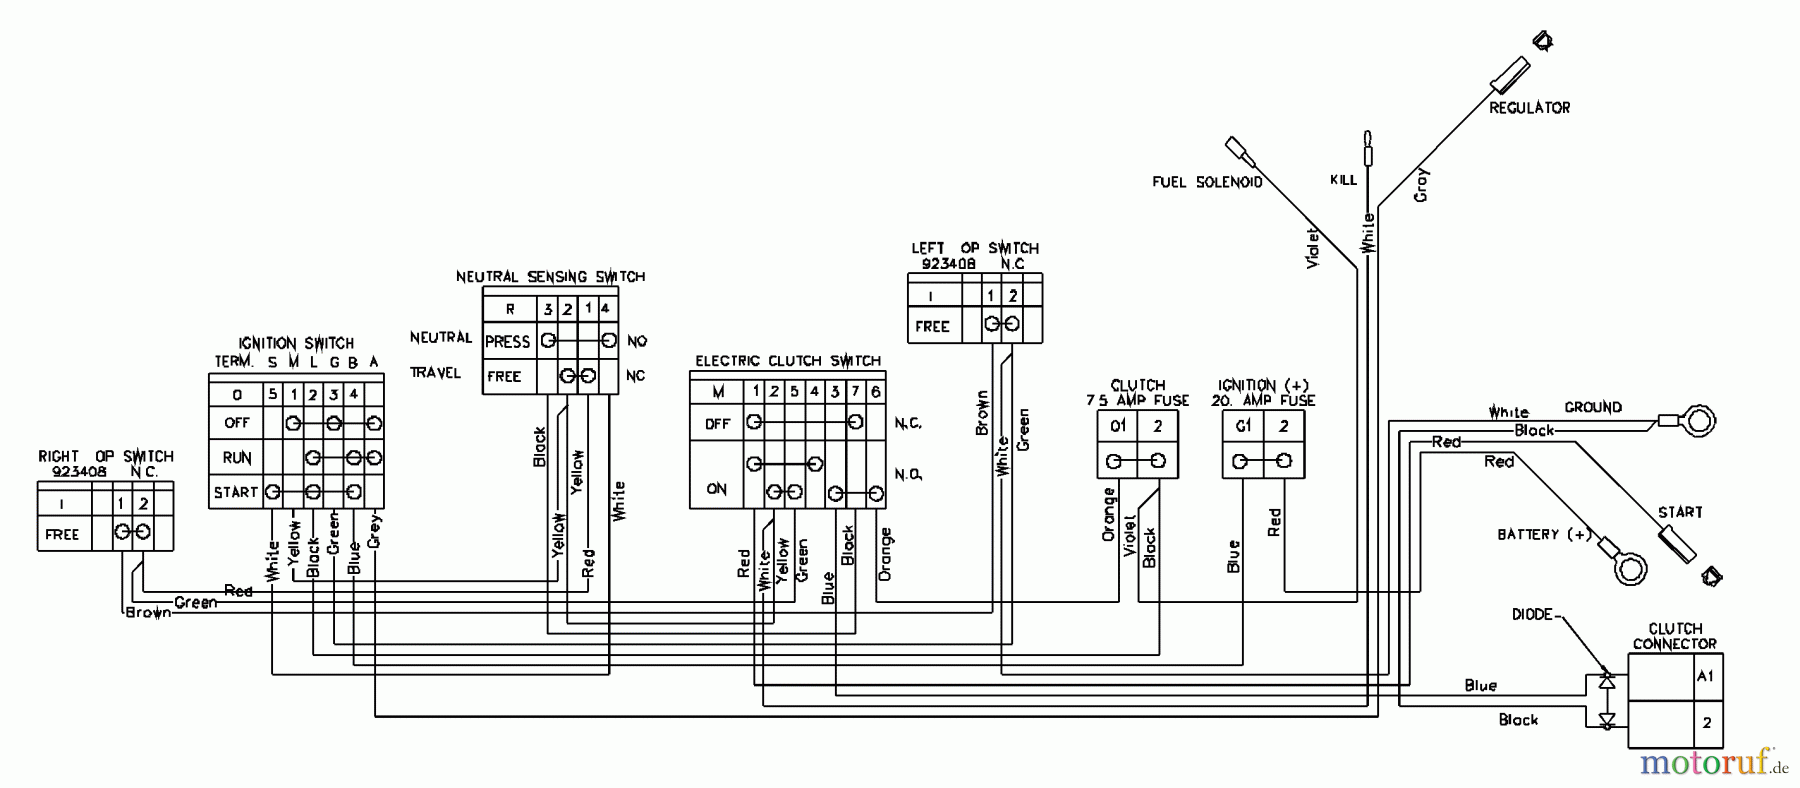  Husqvarna Rasenmäher für Großflächen WHF 4818ETS (968999129) - Husqvarna Wide-Area Walk-Behind Mower (2001-12 to 2002-01) Wiring Schematic